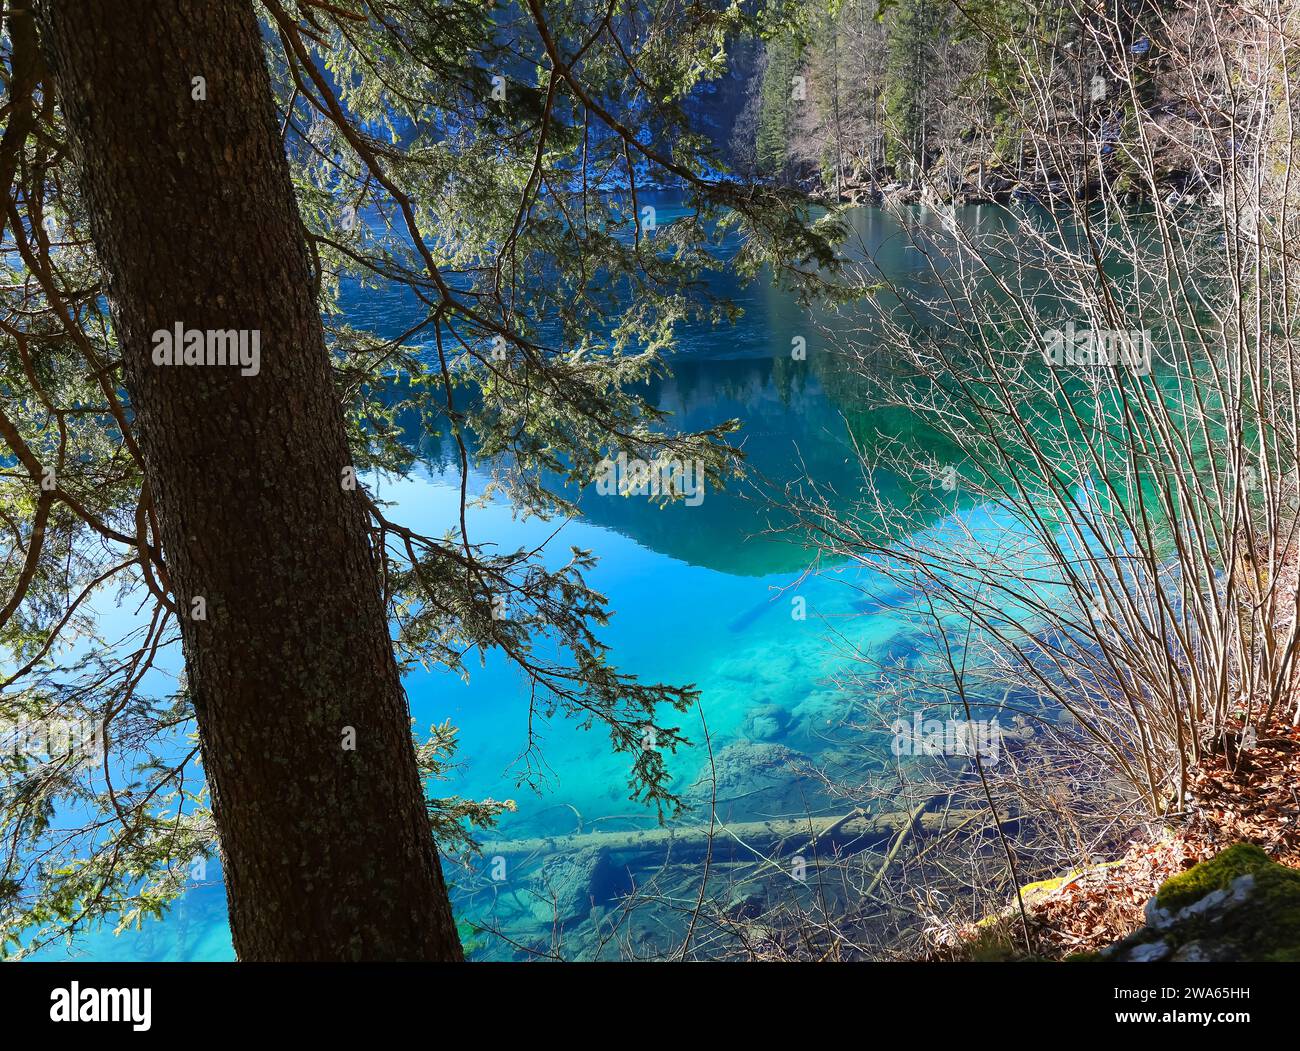 L'eau très transparente du lac alpin et vous pouvez même voir les arbres en dessous comme il est propre et non contaminé Banque D'Images